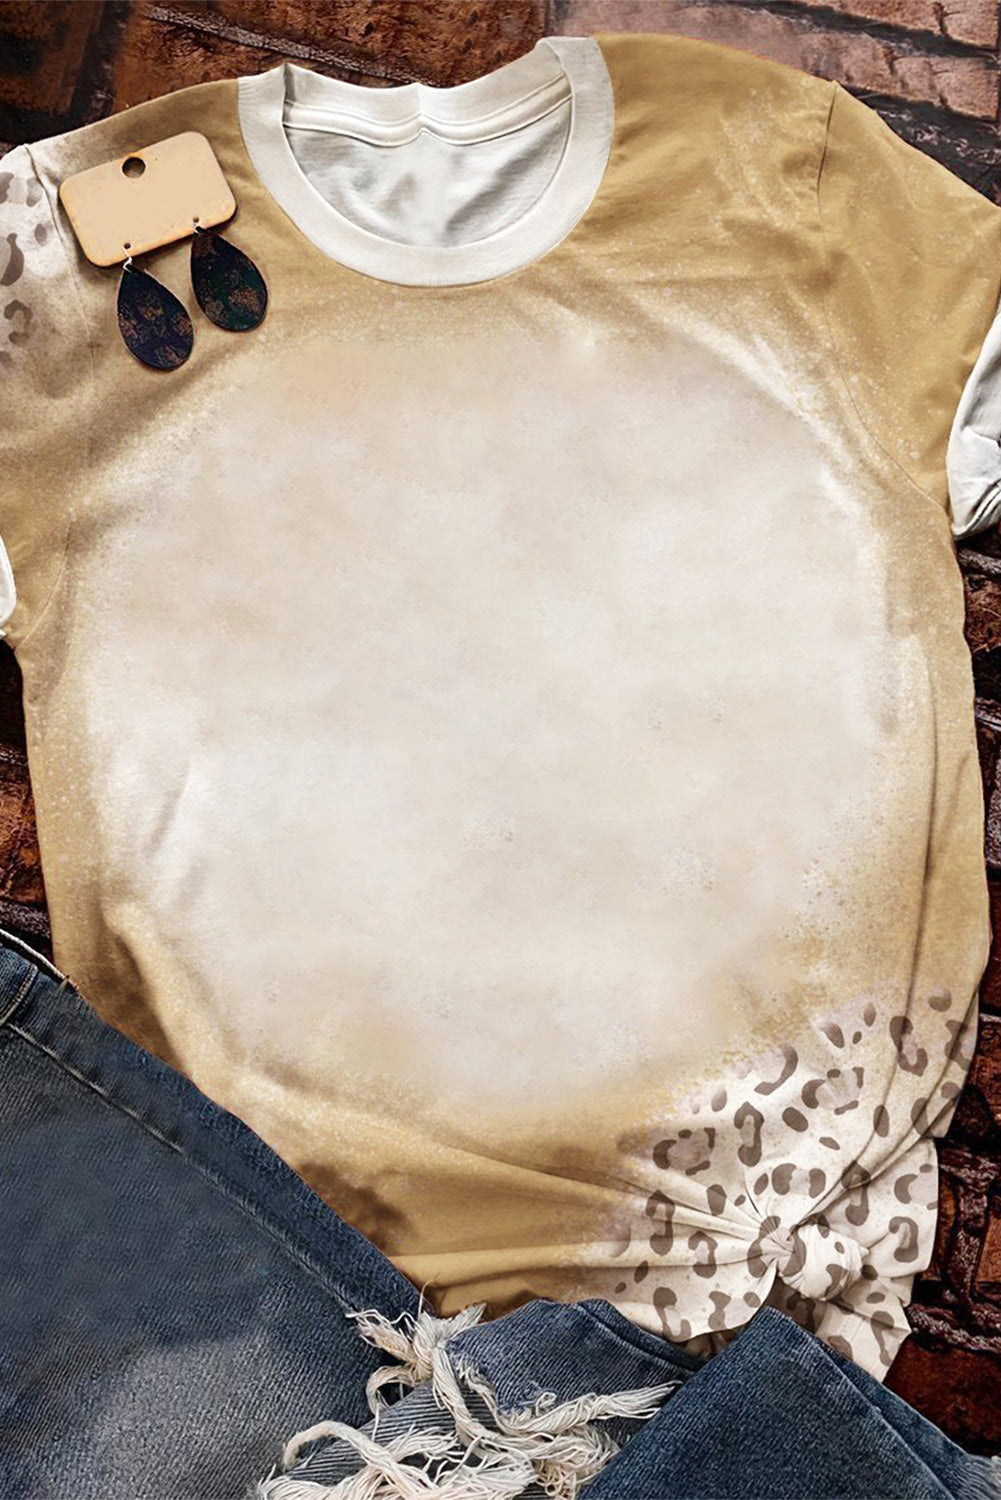 Kaki izbijeljena majica s okruglim izrezom s leopard uzorkom